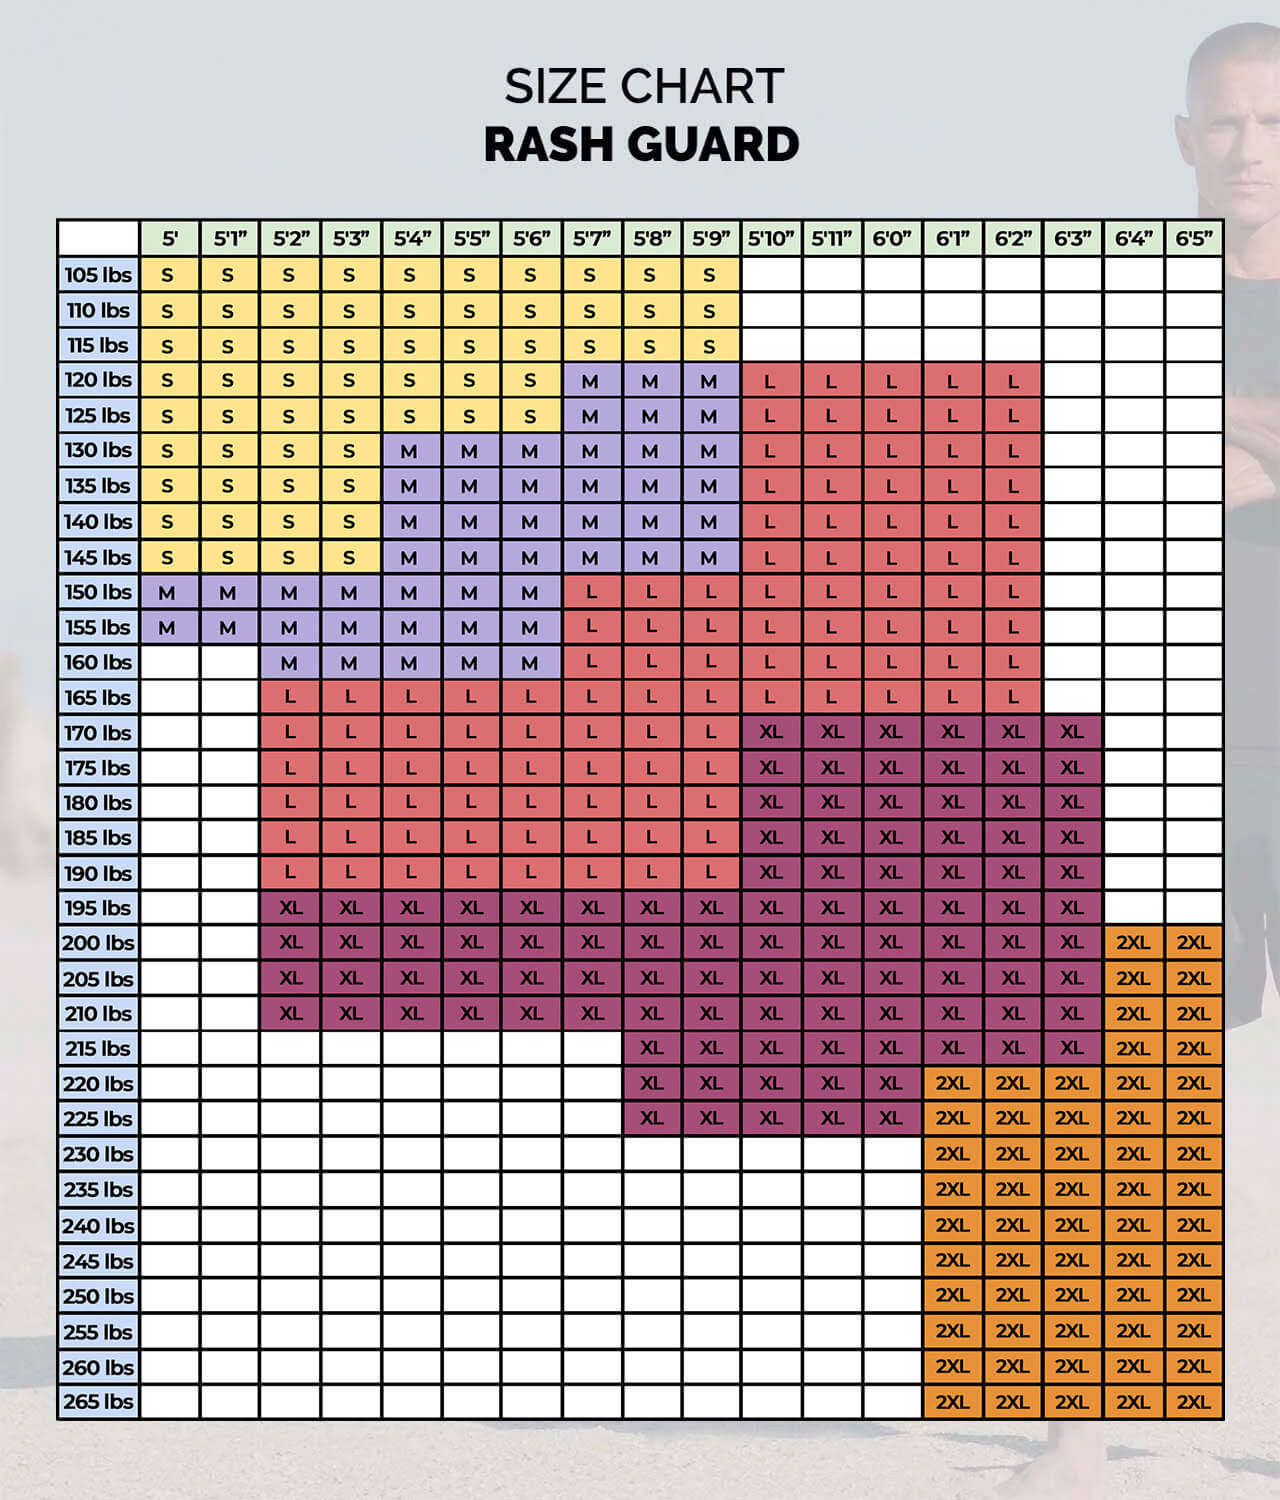 Elite Sports Men's Standard White Long Sleeve Jiu Jitsu BJJ Rash Guard Size Guide